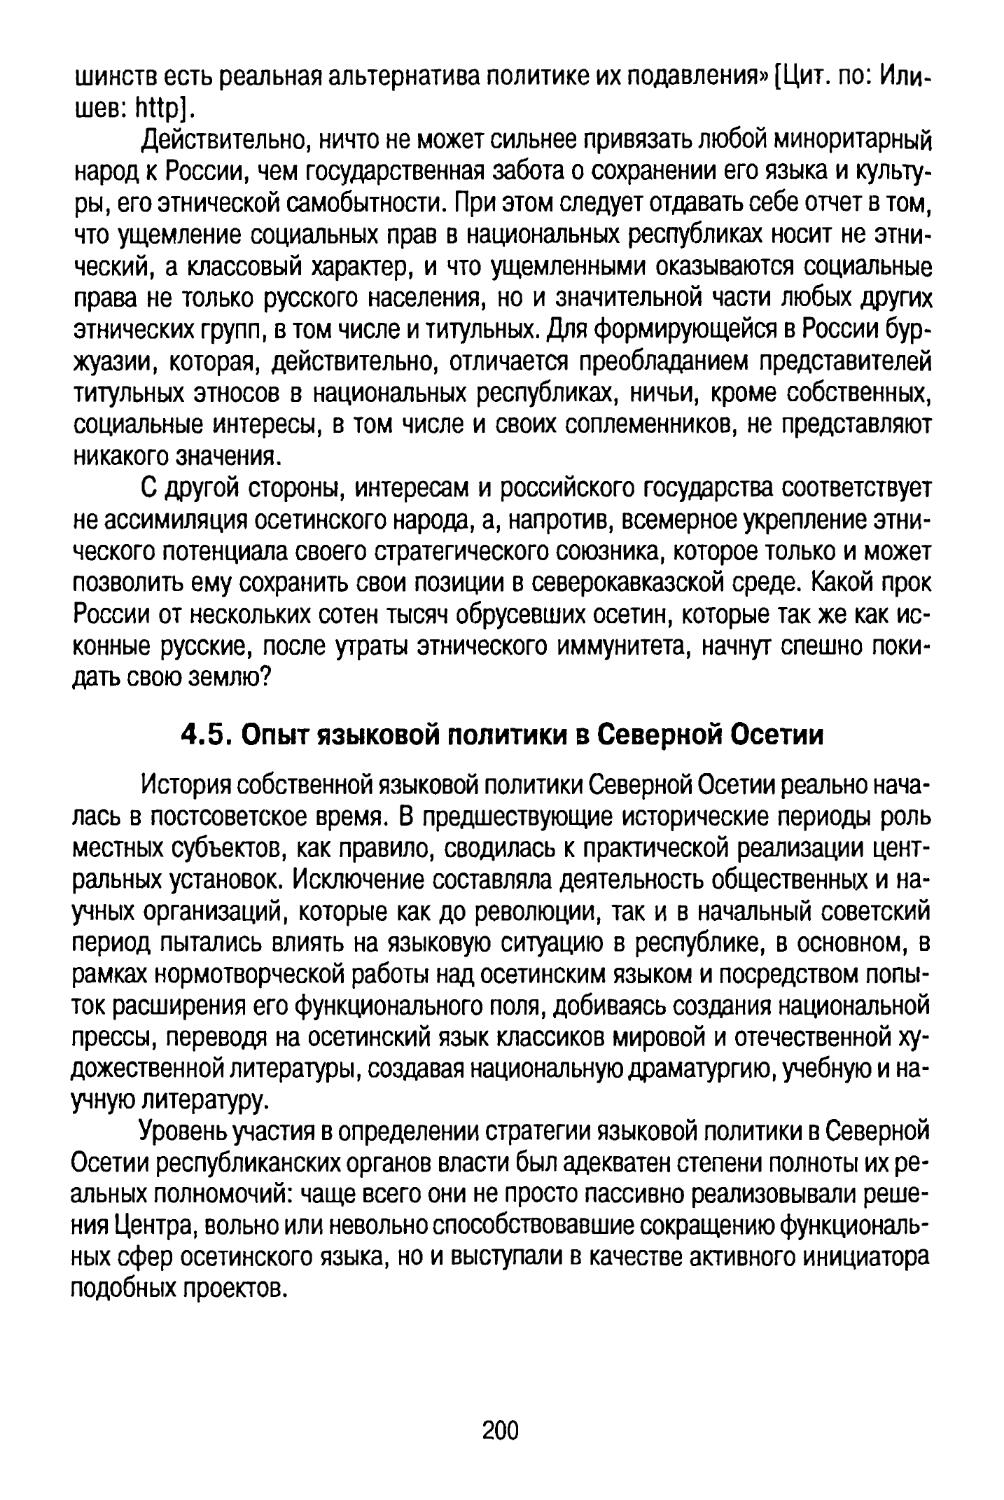 4.5. Опыт языковой политики в Северной Осетии